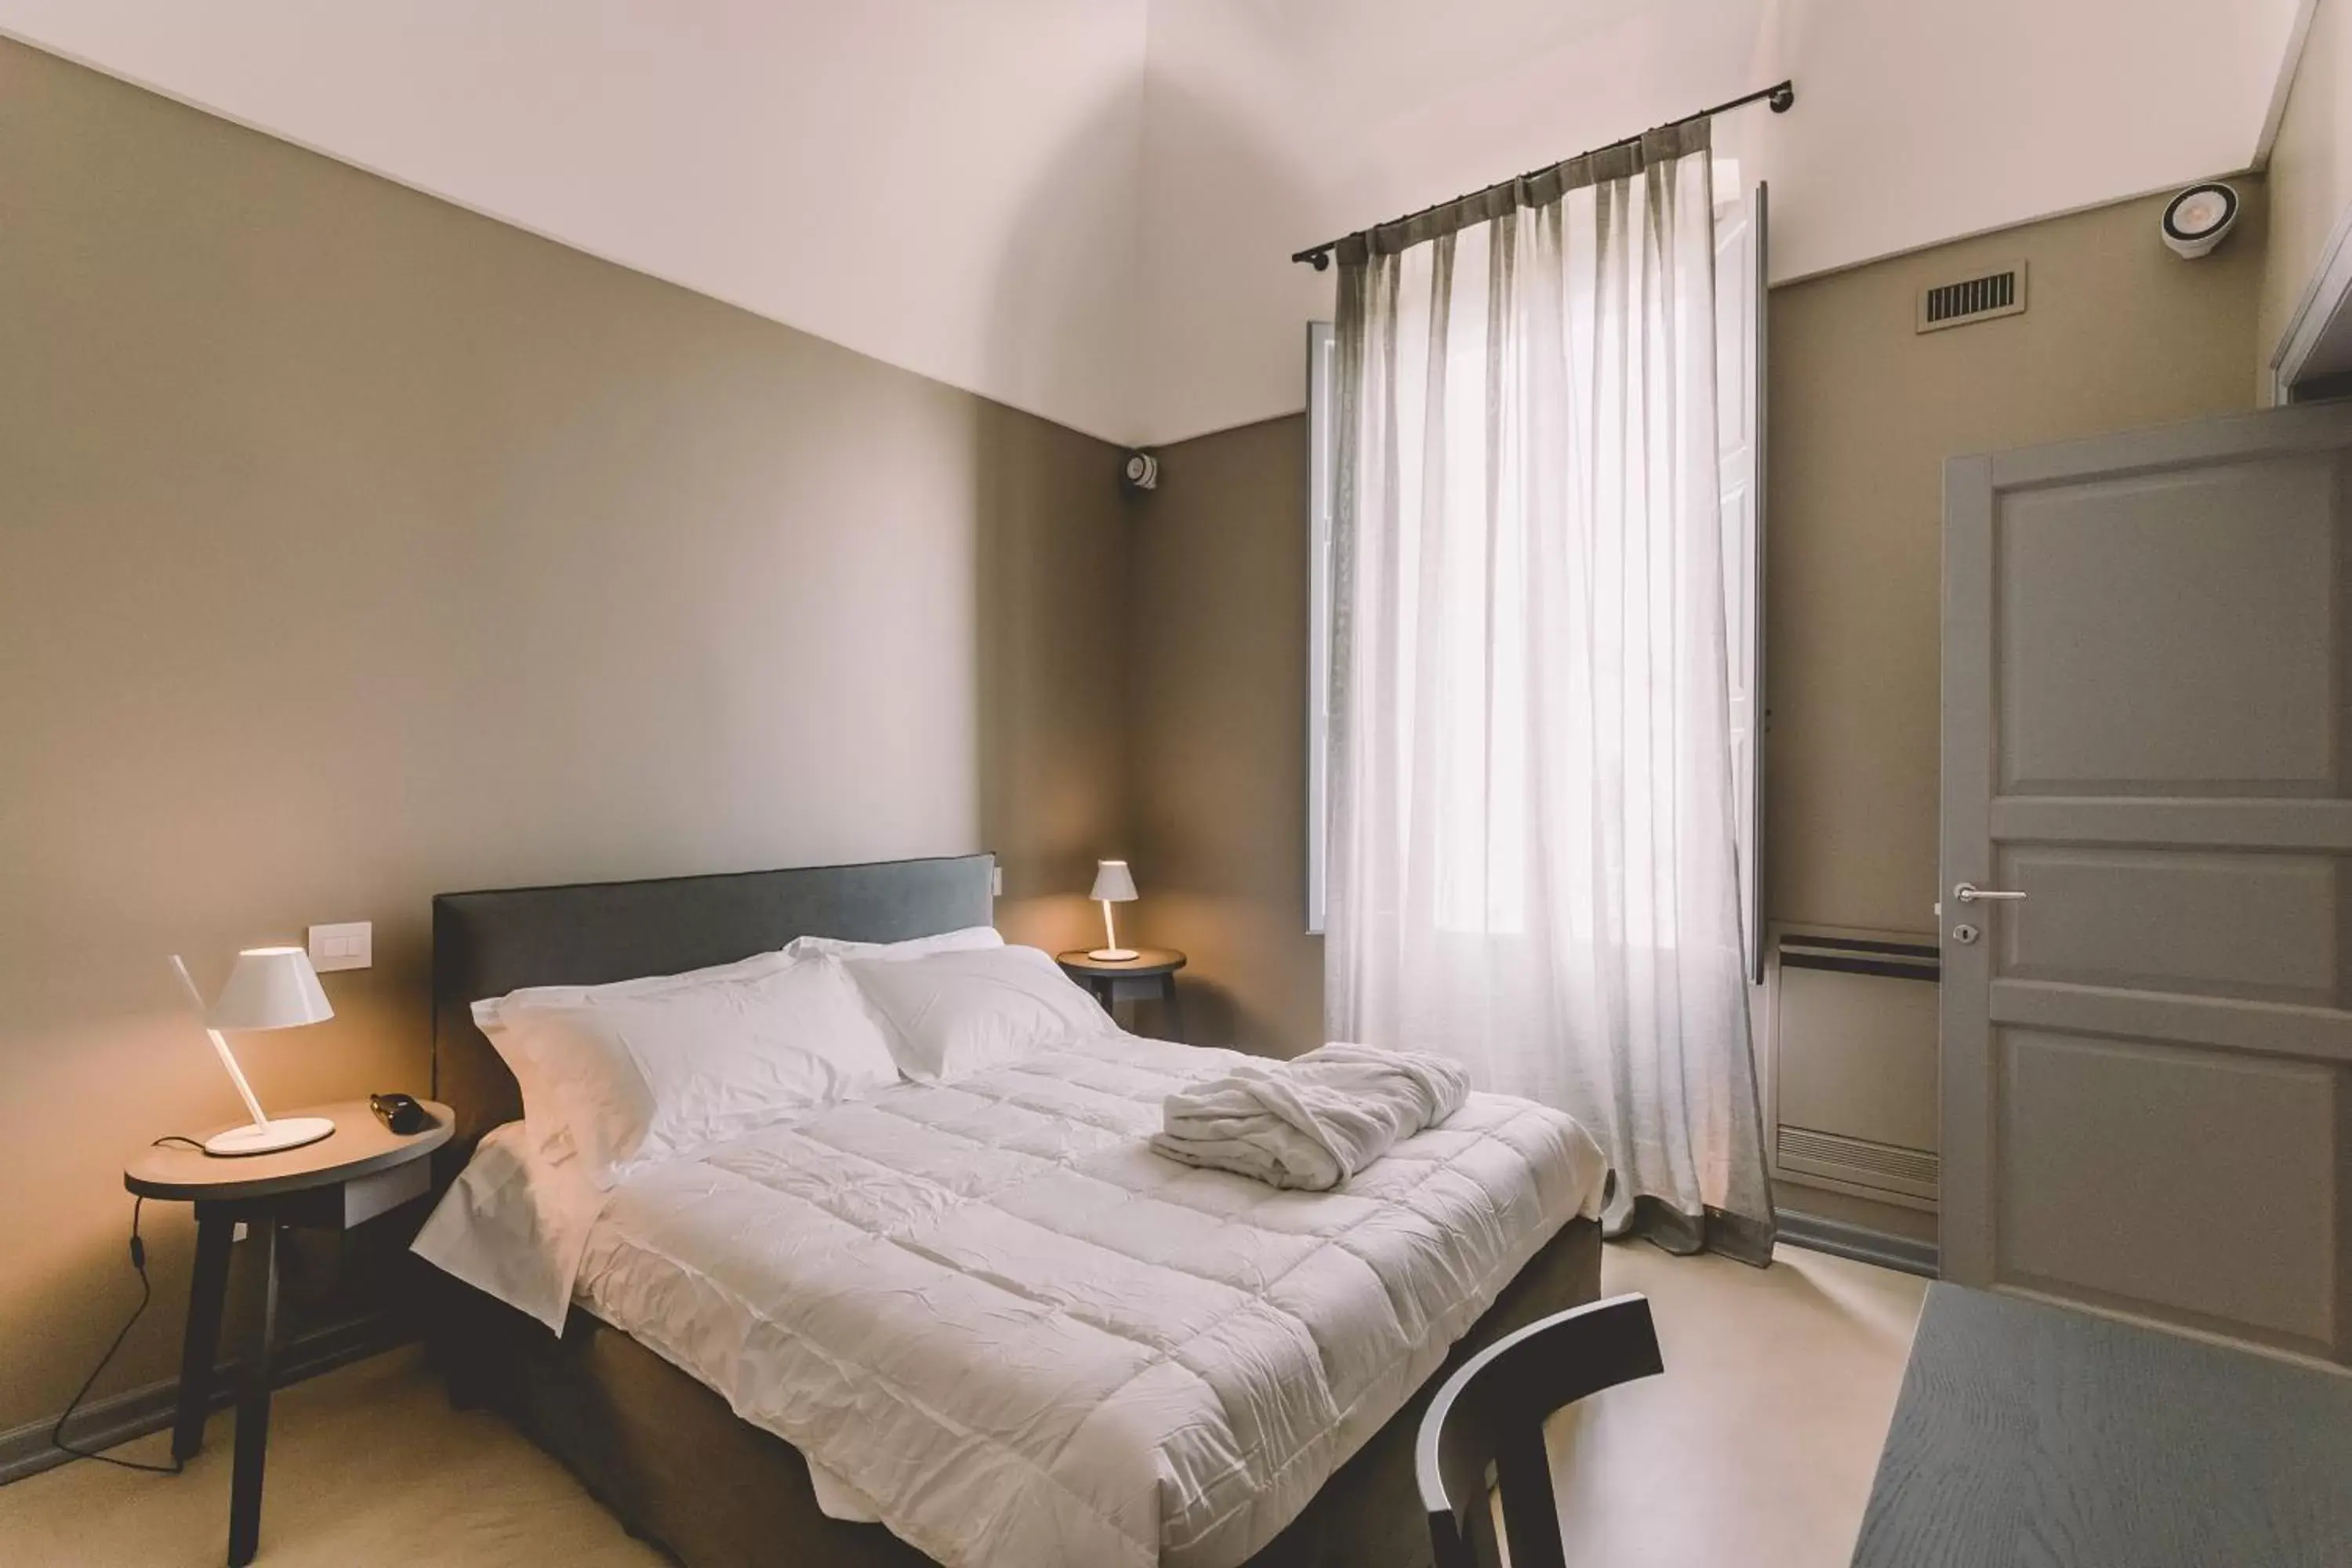 Bed, Room Photo in Cinquevite